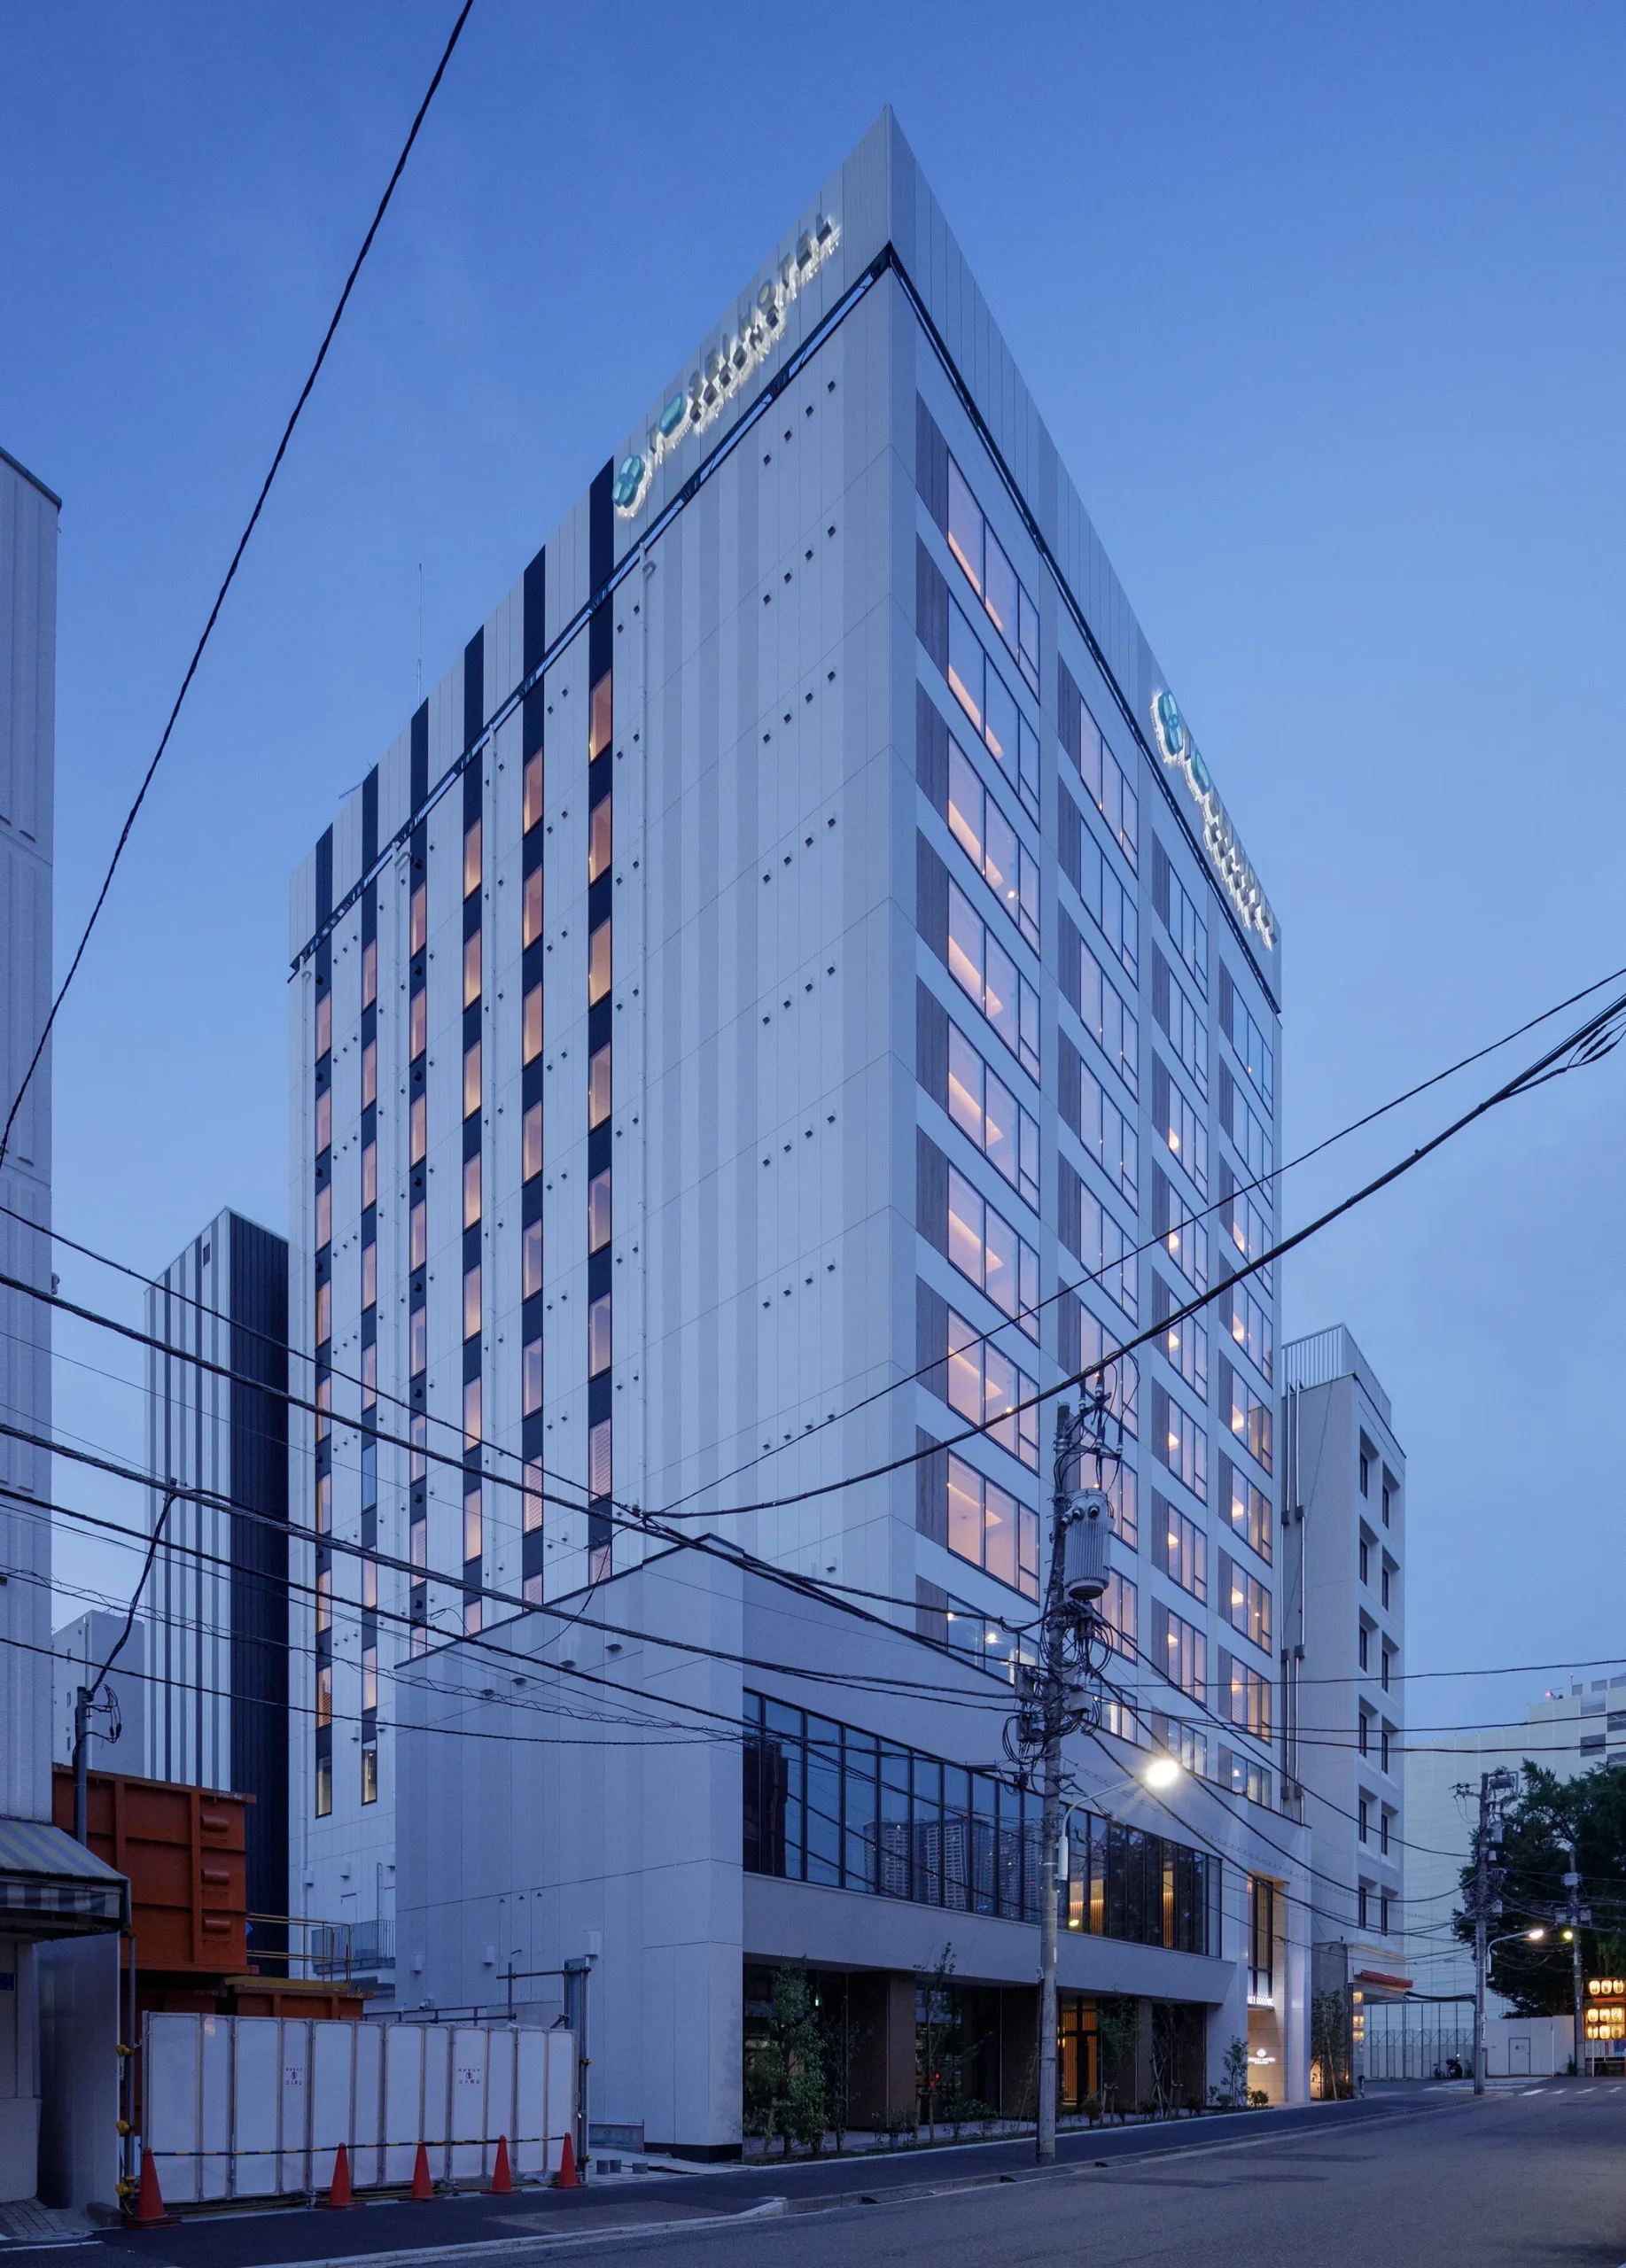 トーセイホテル築地銀座プレミア新築工事のサムネイル画像です